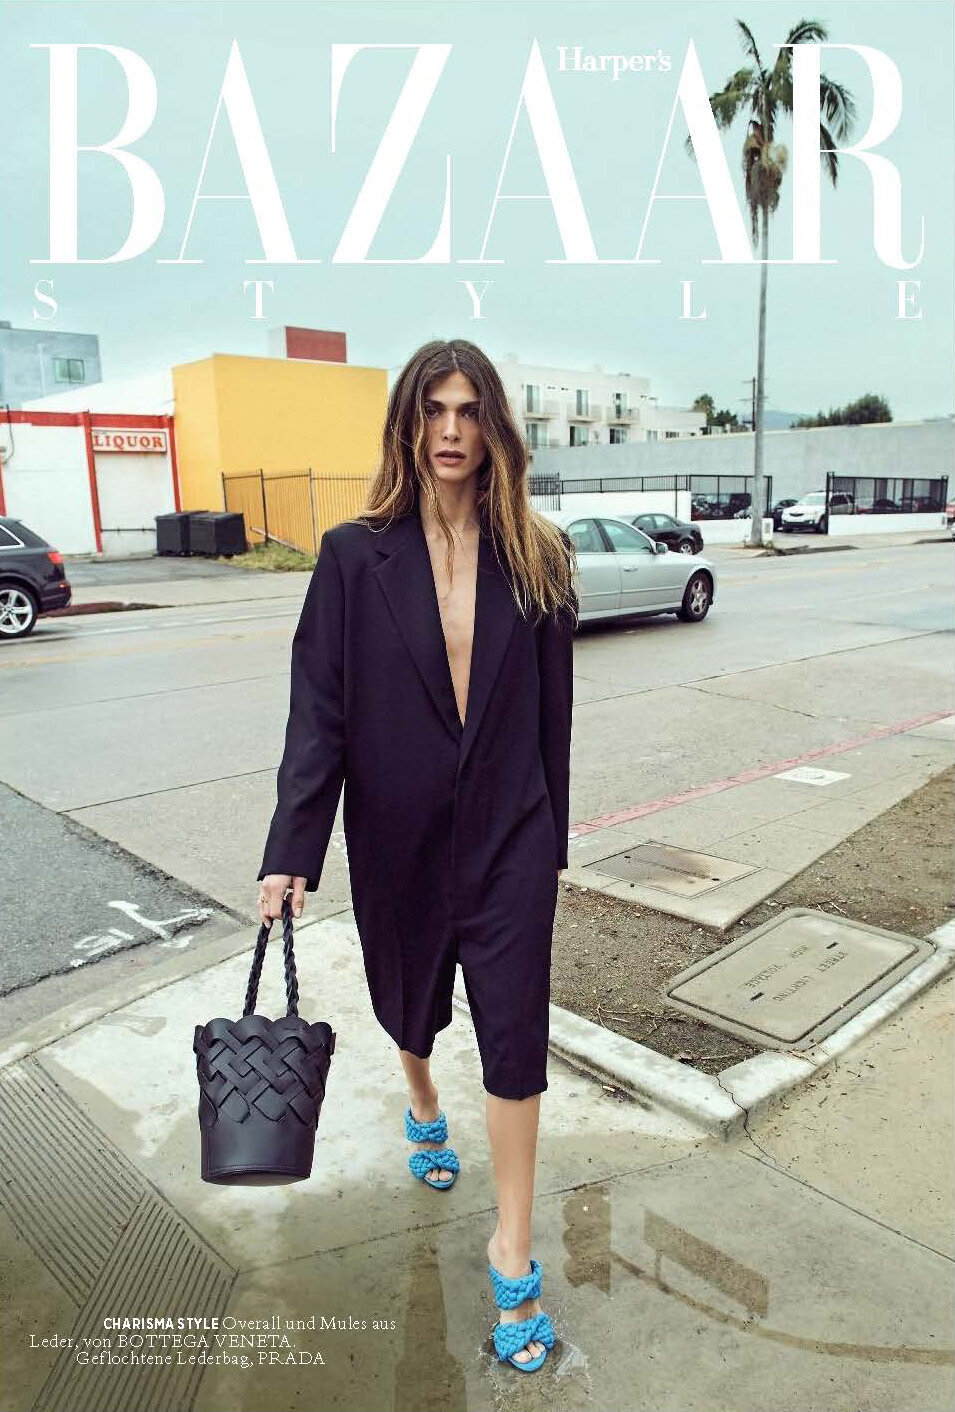 Harper's Bazaar Germany | Elisa Sednaoui — REGAN CAMERON